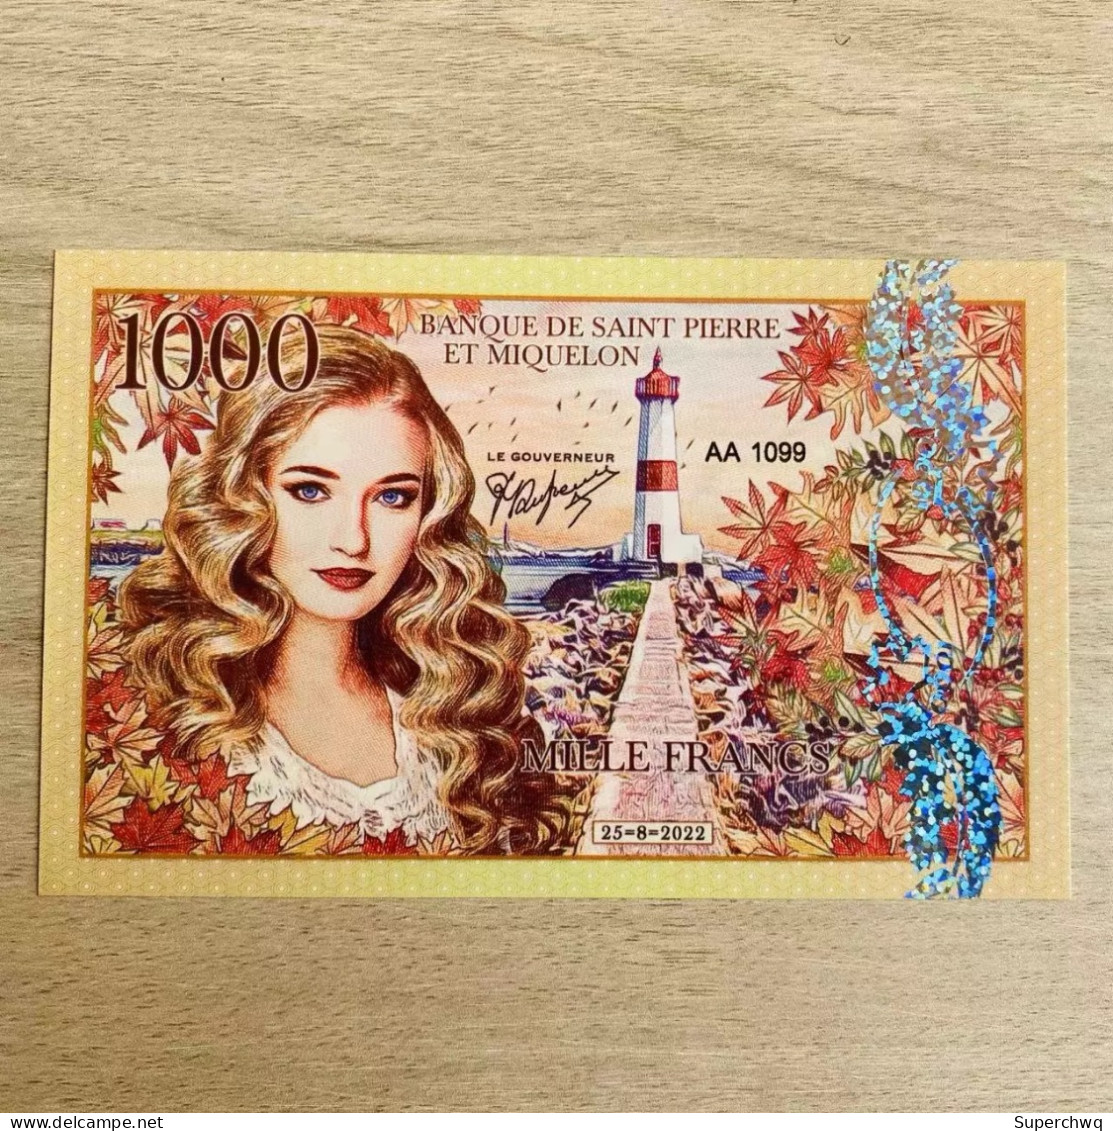 2022 Saint Pierre And Miquelon 1000 Franc Plastic Fluorescent Banknotes，UNC - St. Helena